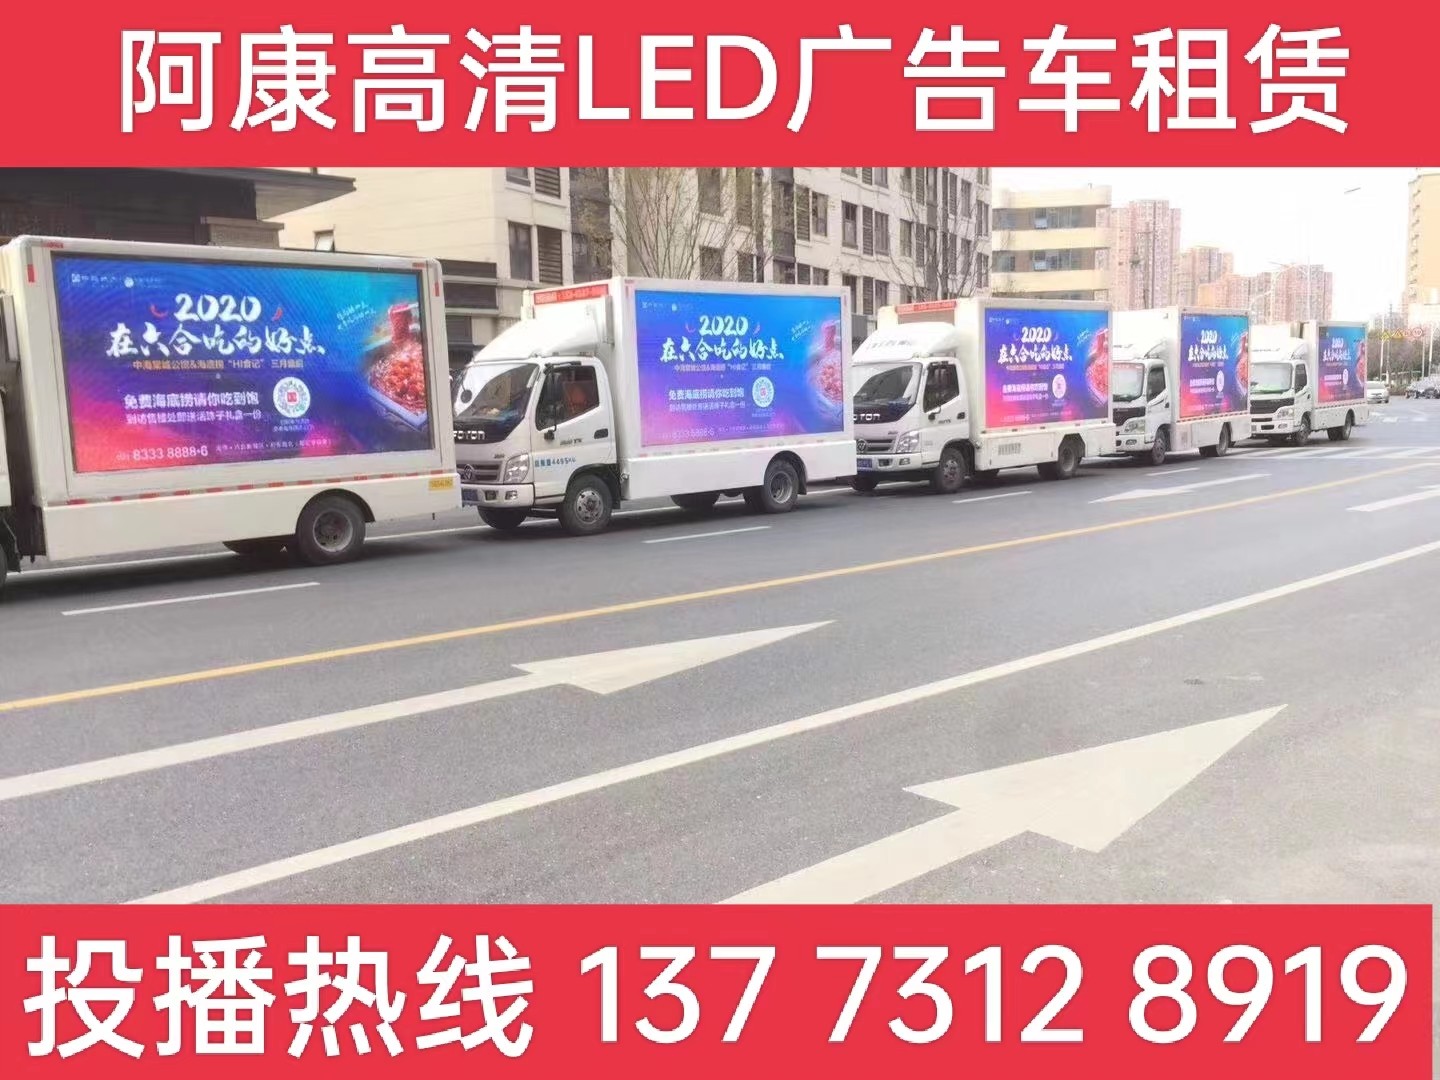 泰州宣传车出租-海底捞LED广告